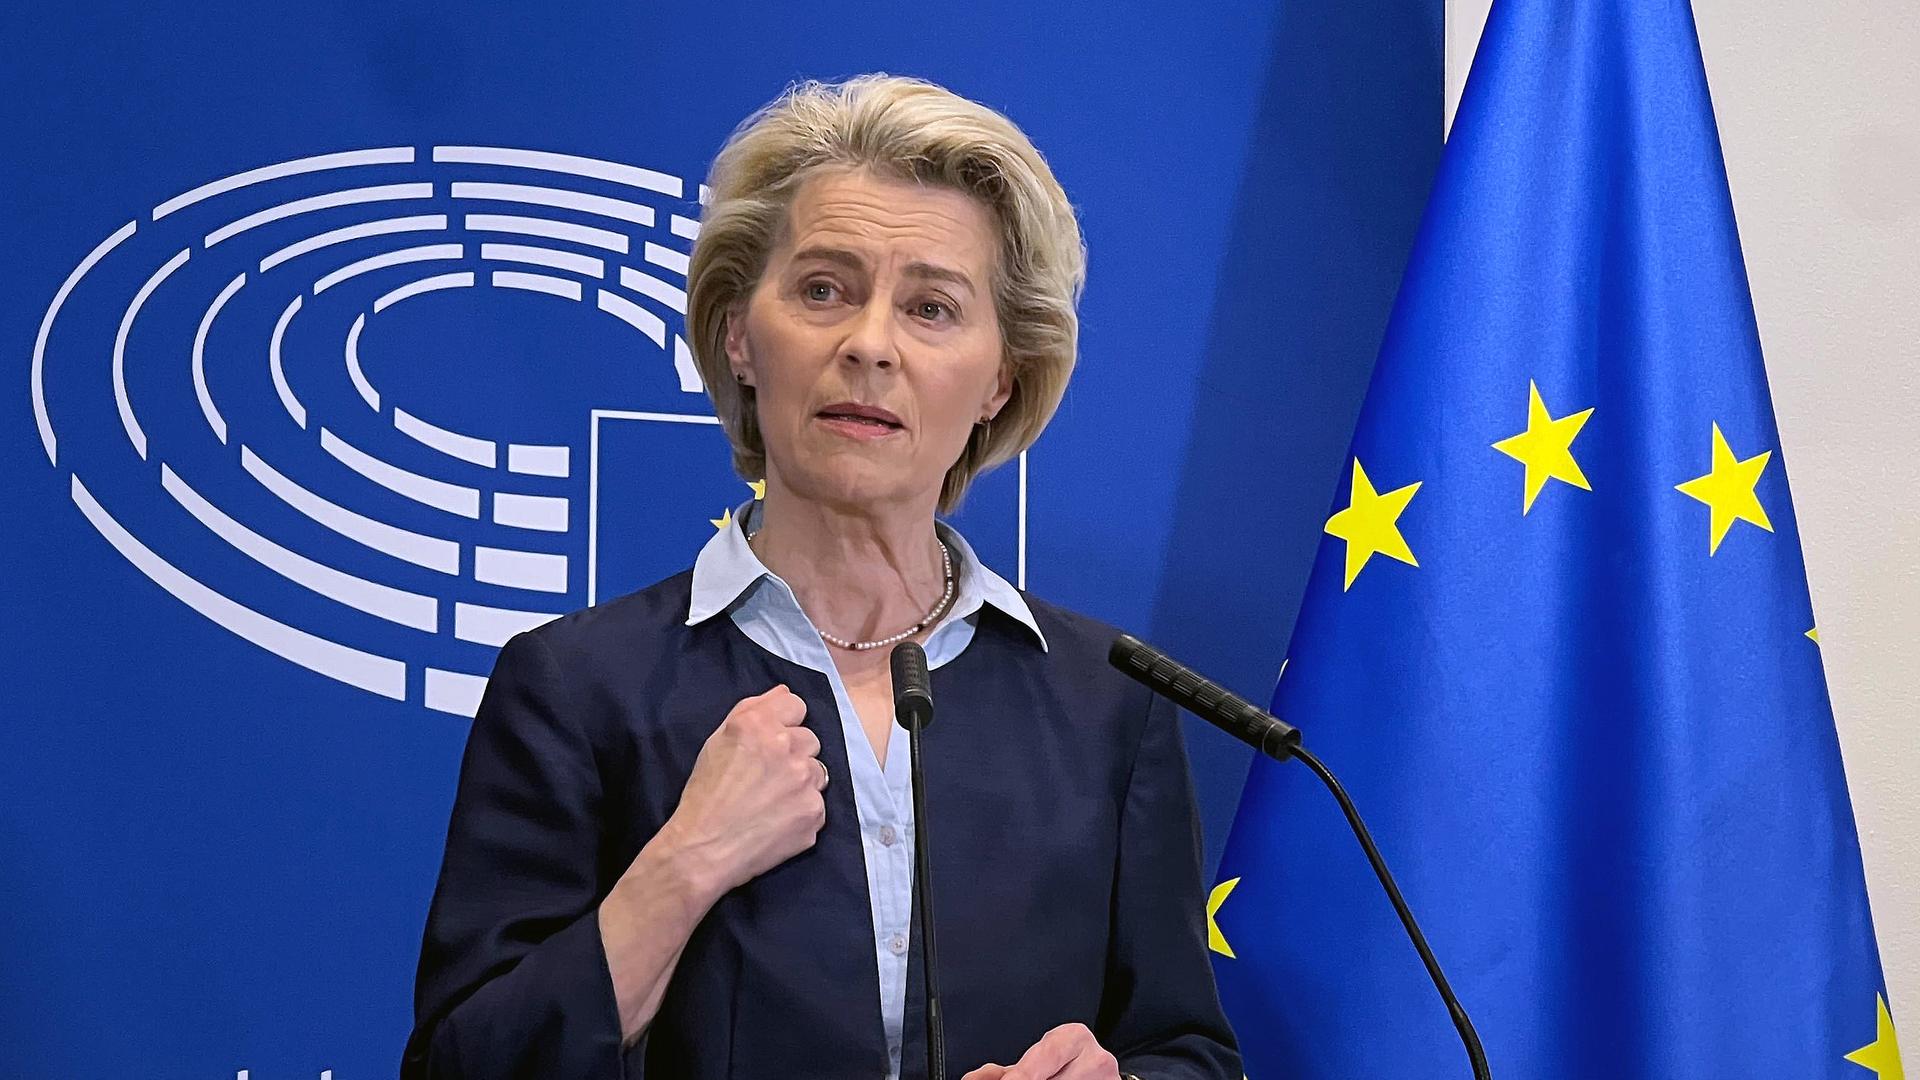 Ursula von der Leyen, Präsidentin der Europäischen Kommission, spricht an einem Redepult. Hinter ihr das Logo des Europäischen Parlaments mit dem stilisierten Plenarsaal und daneben die EU-Flagge.